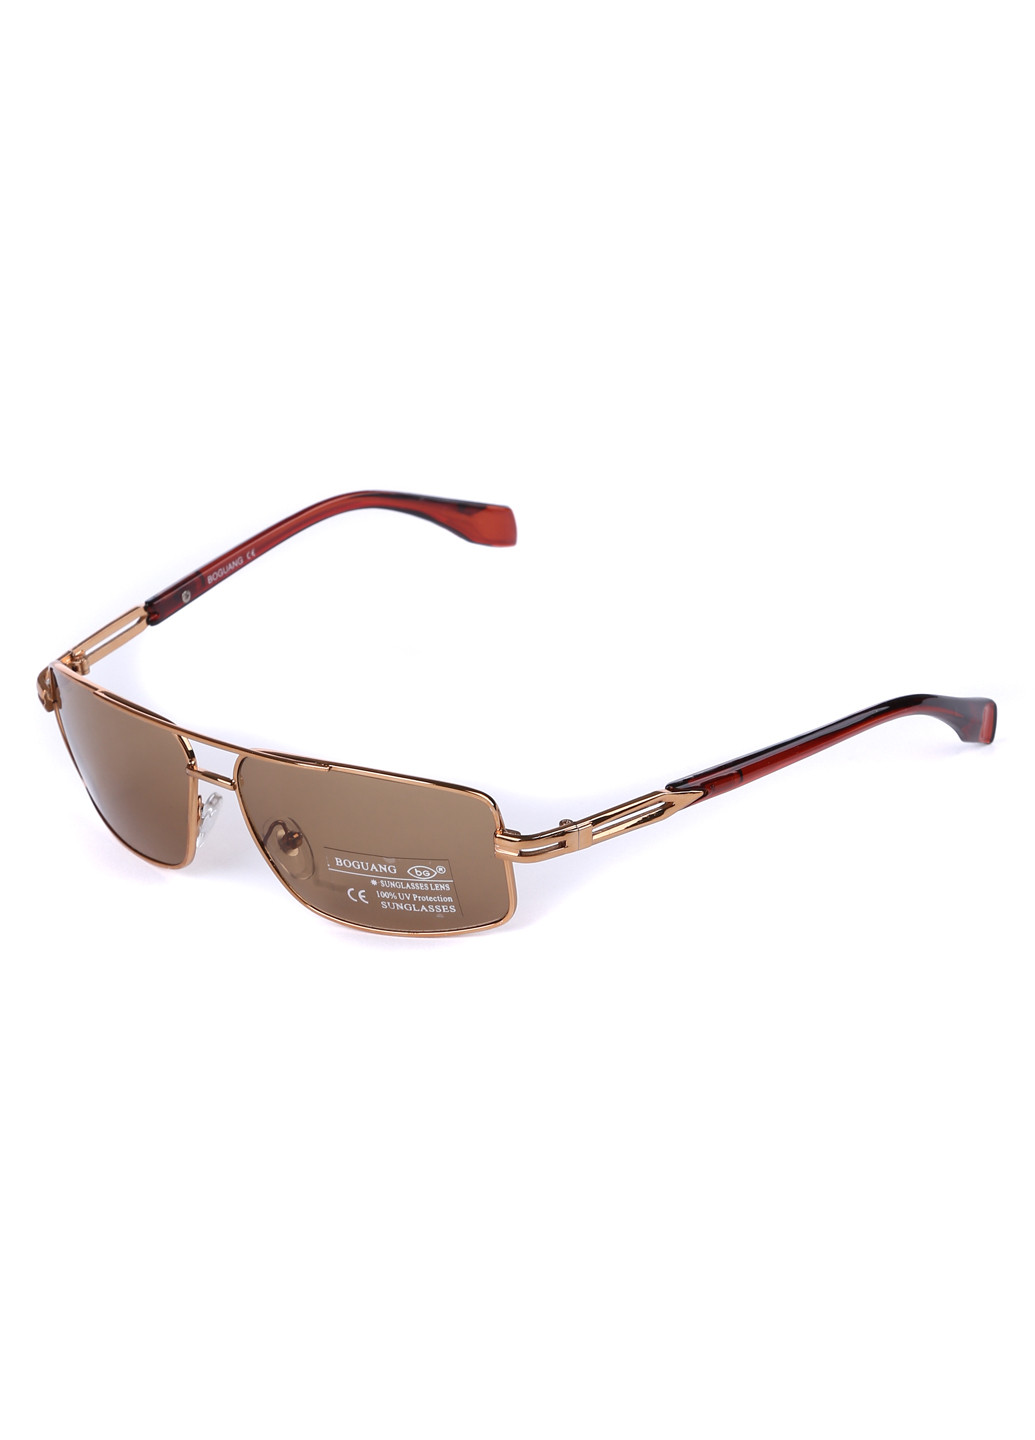 Солнцезащитные очки Sofitel коричневые